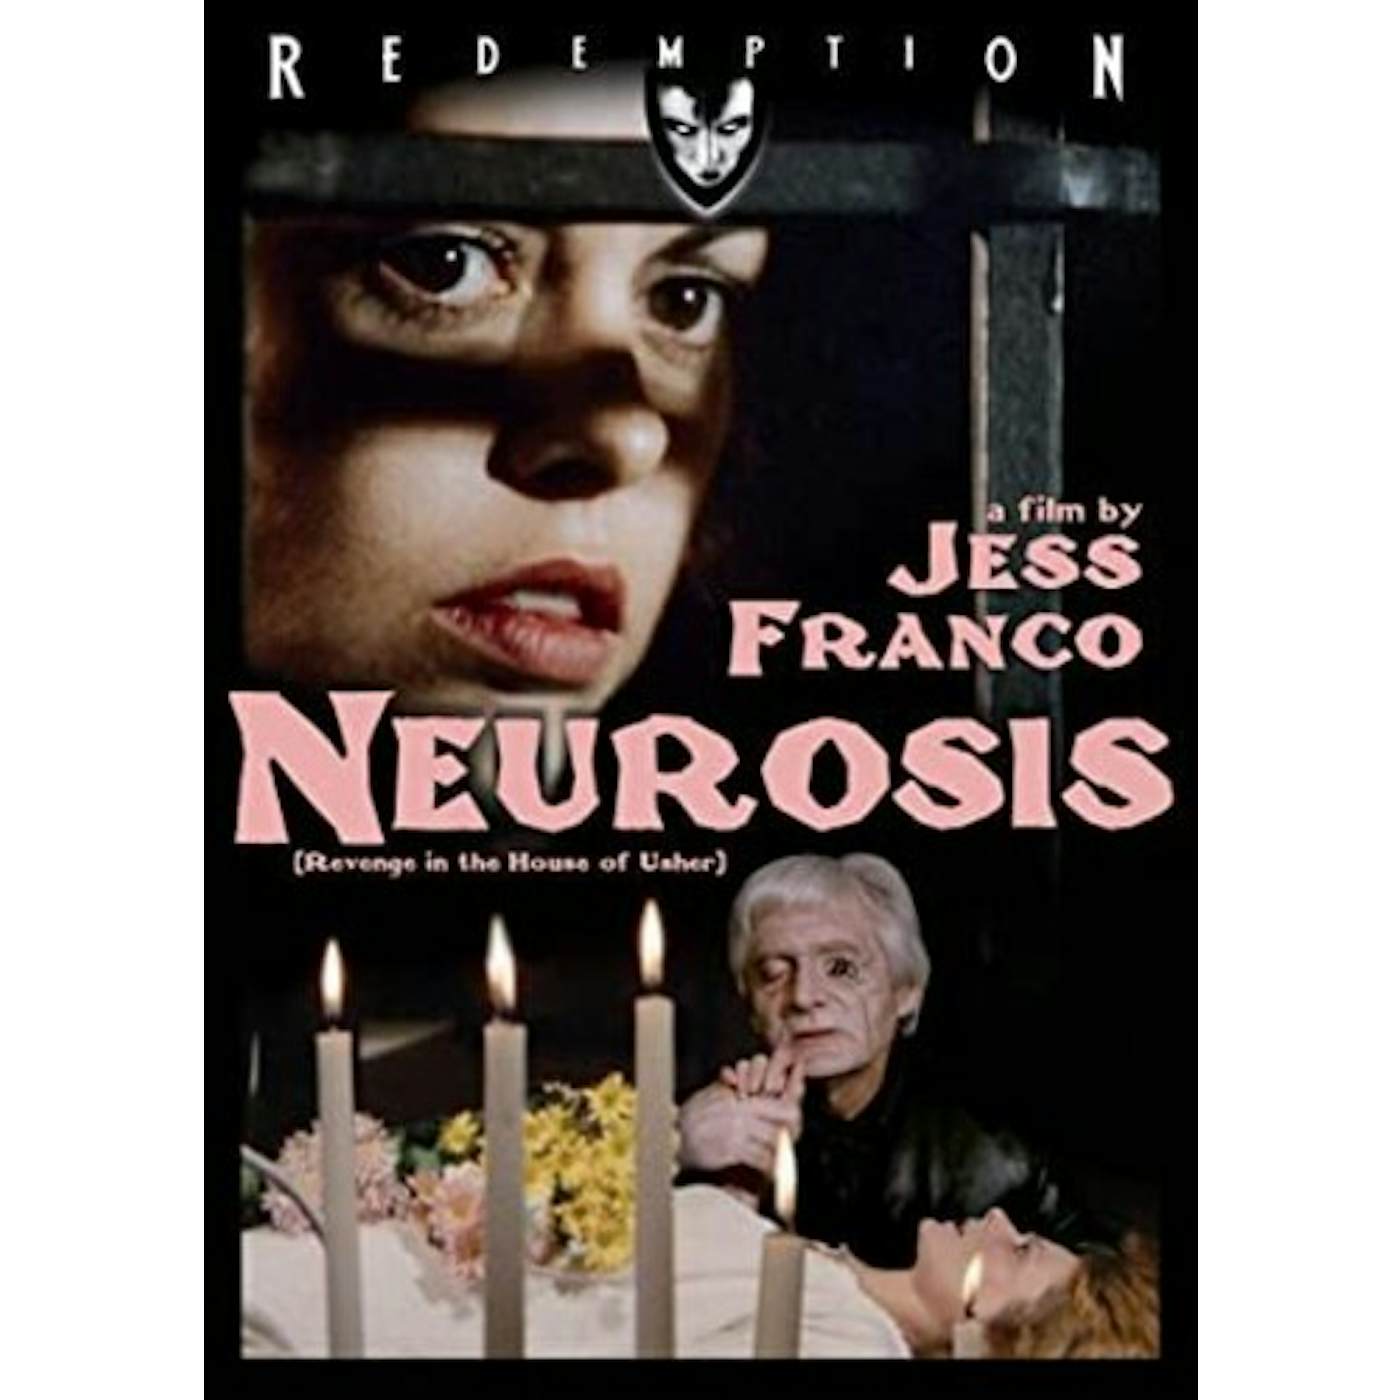 NEUROSIS (1985) DVD